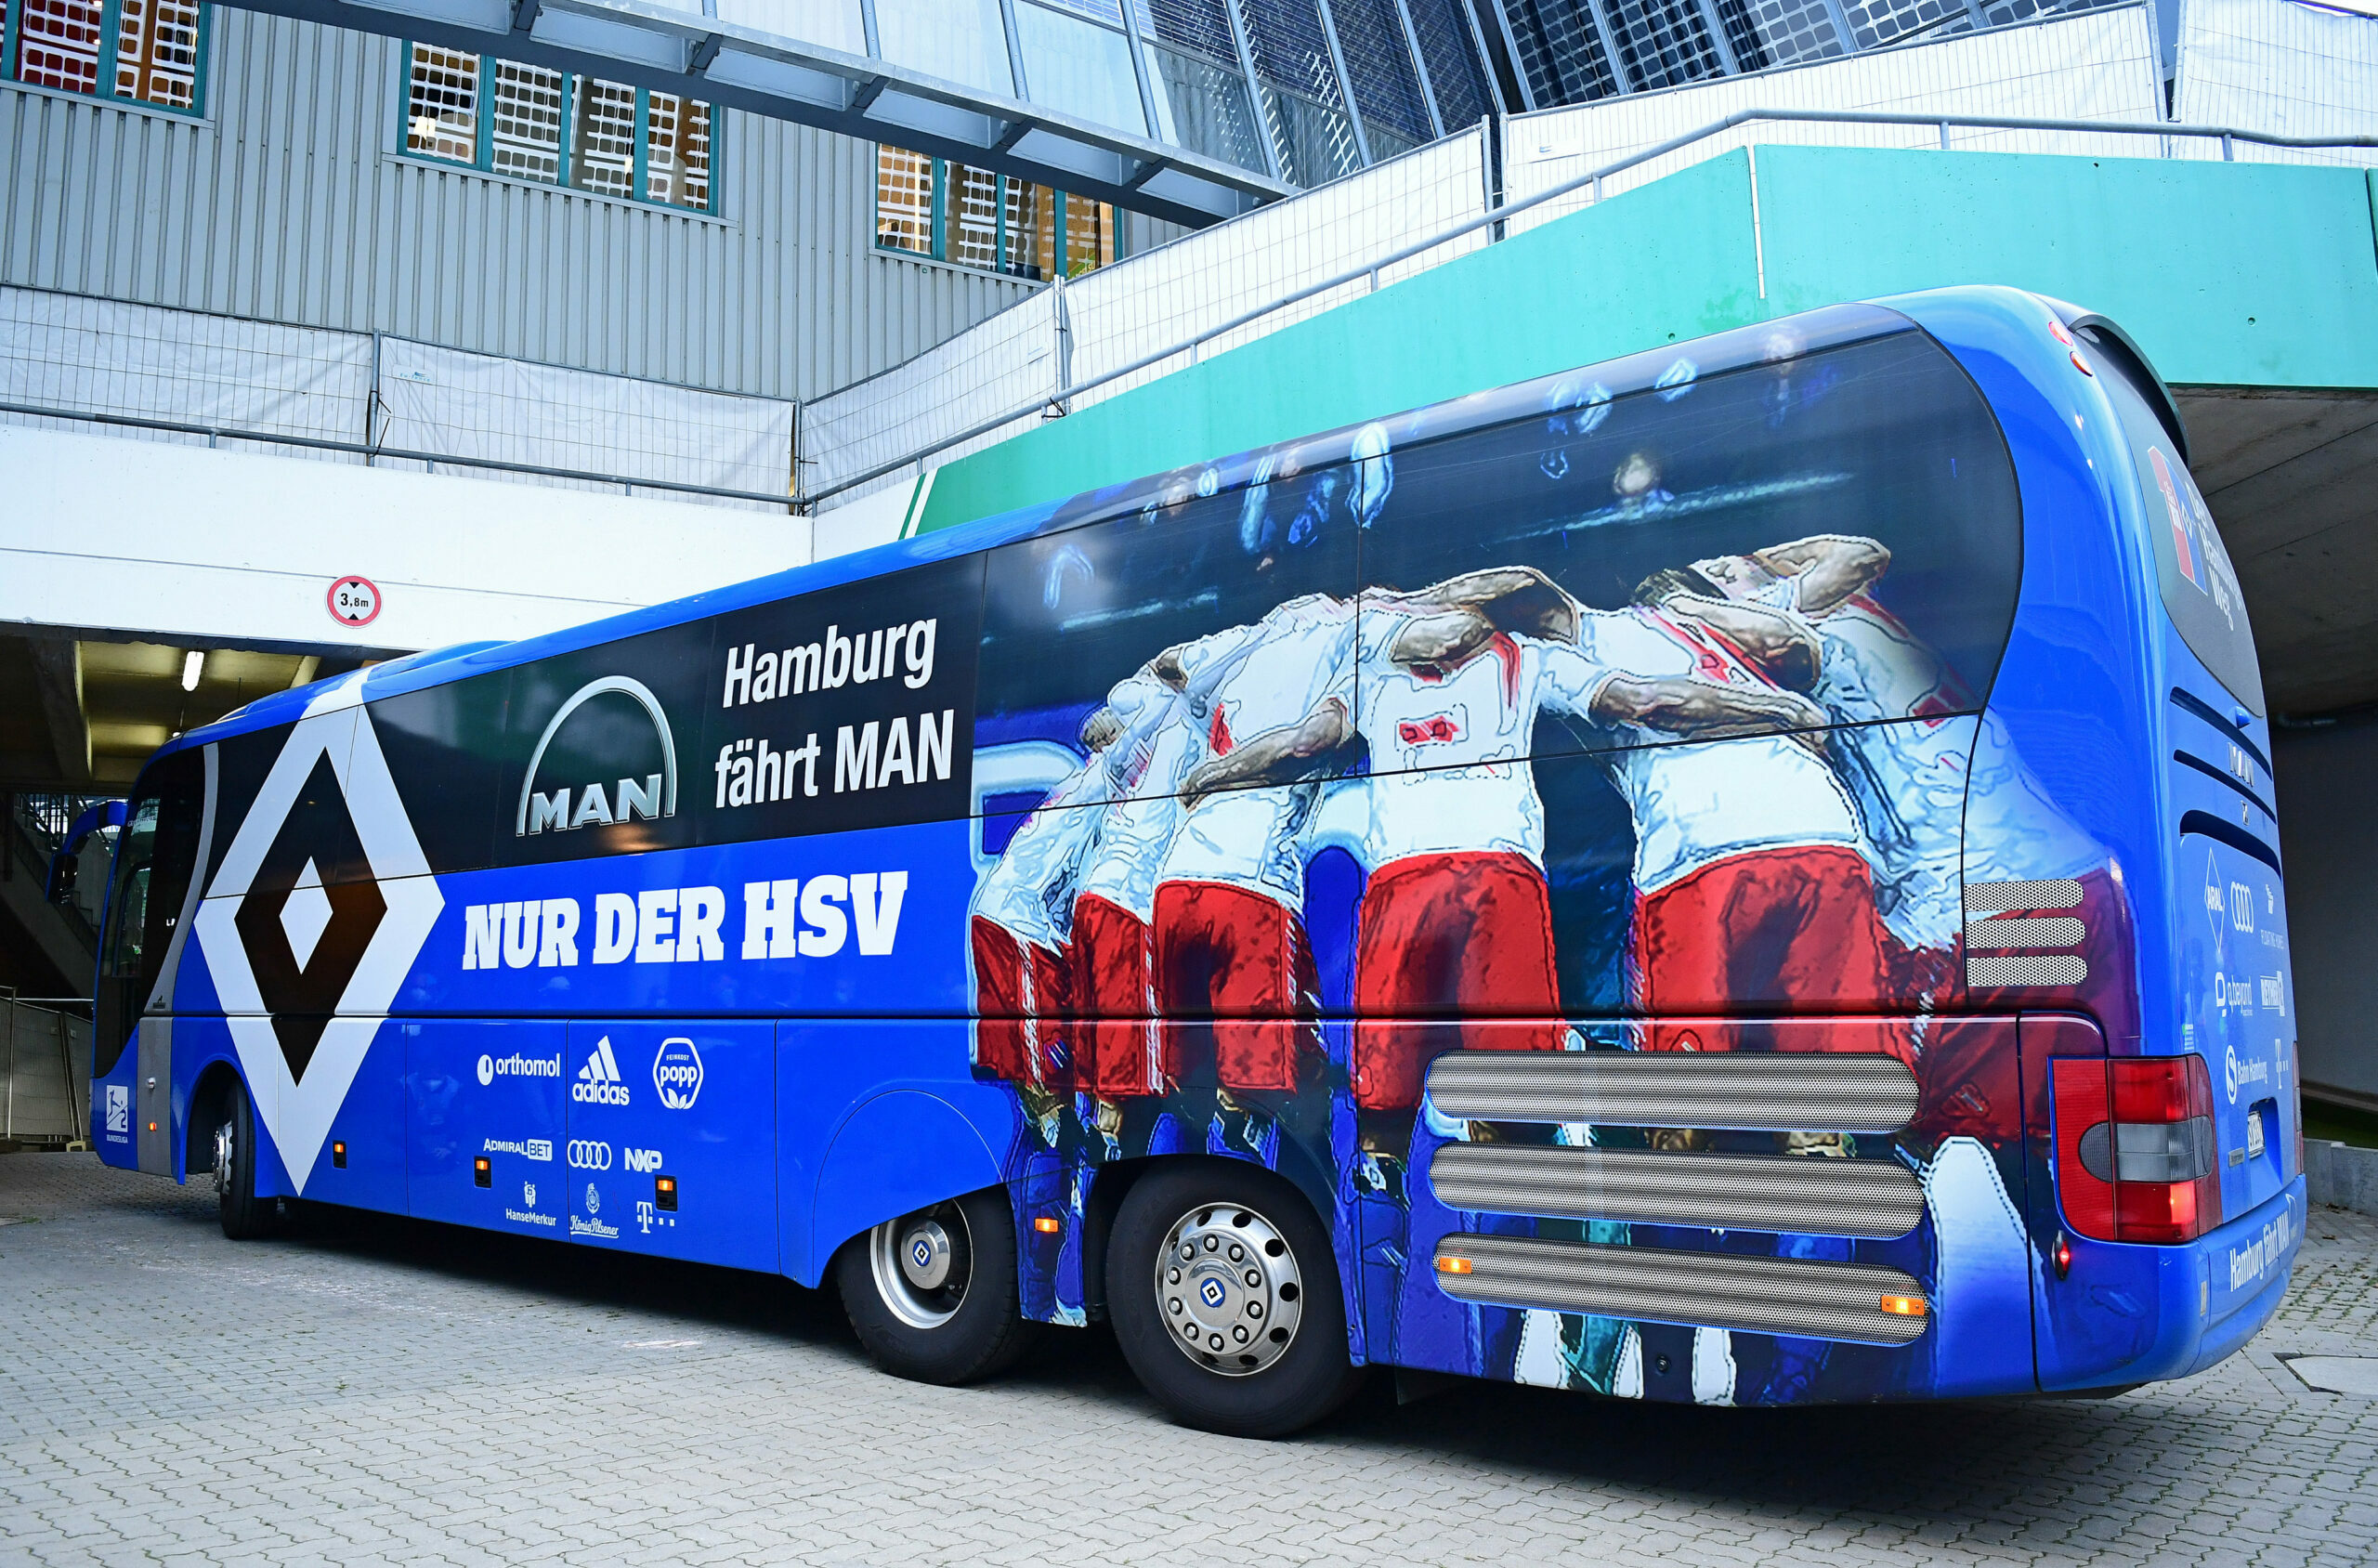 Der Mannschaftsbus wird das bevorzugte Transportmittel des HSV.